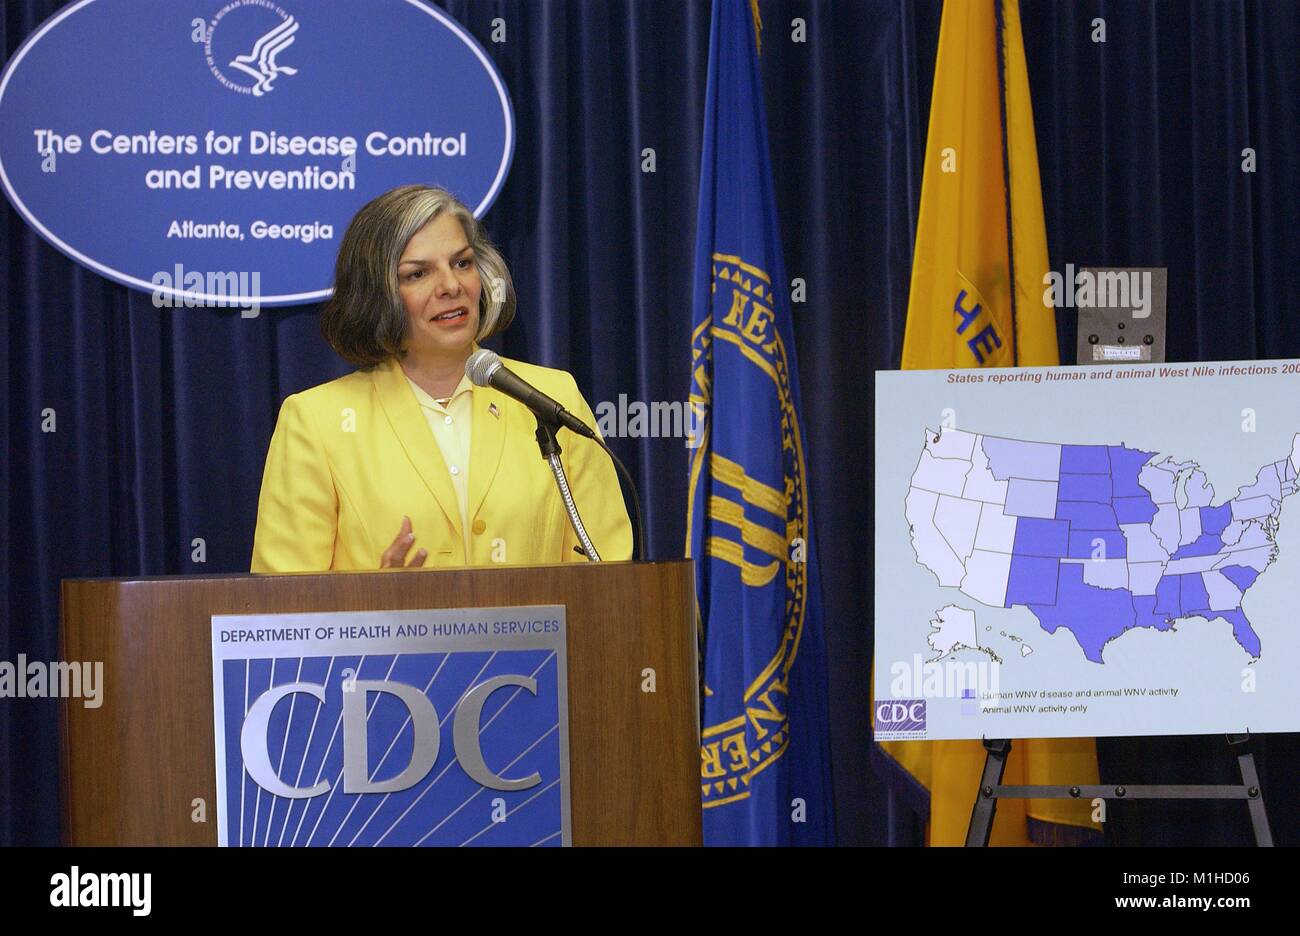 Fotografia di Julie Louise Gerberding, MD, ex direttore CDC, parlando a un CDC press briefing sulla crescente casi umani colpiti con il virus del Nilo occidentale, Agosto 2003. Immagine cortesia CDC. () Foto Stock